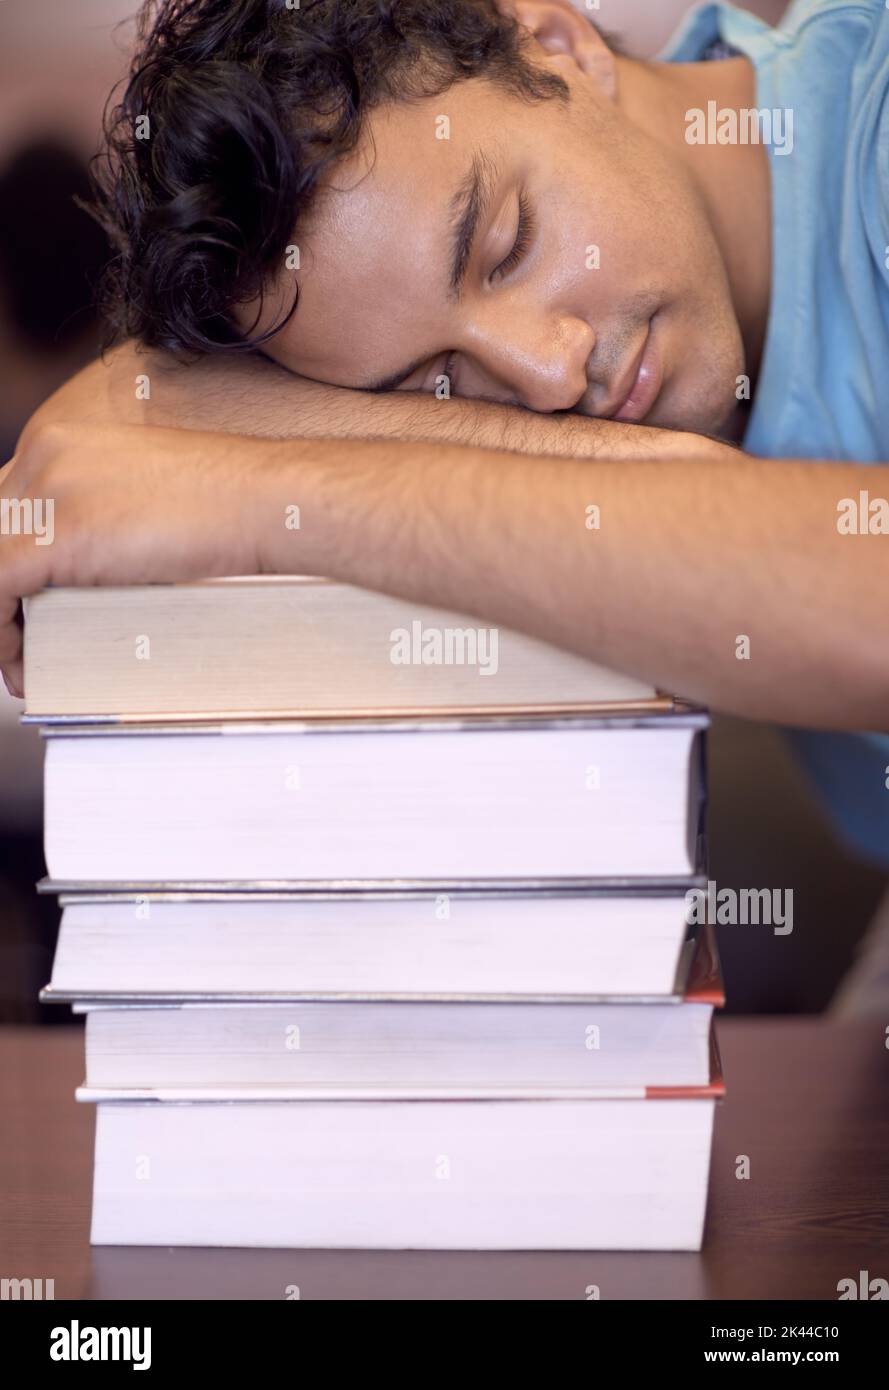 L'heure de l'examen lui a été donnée. Un jeune étudiant dormant sur son bureau après une session d'étude fatigante. Banque D'Images